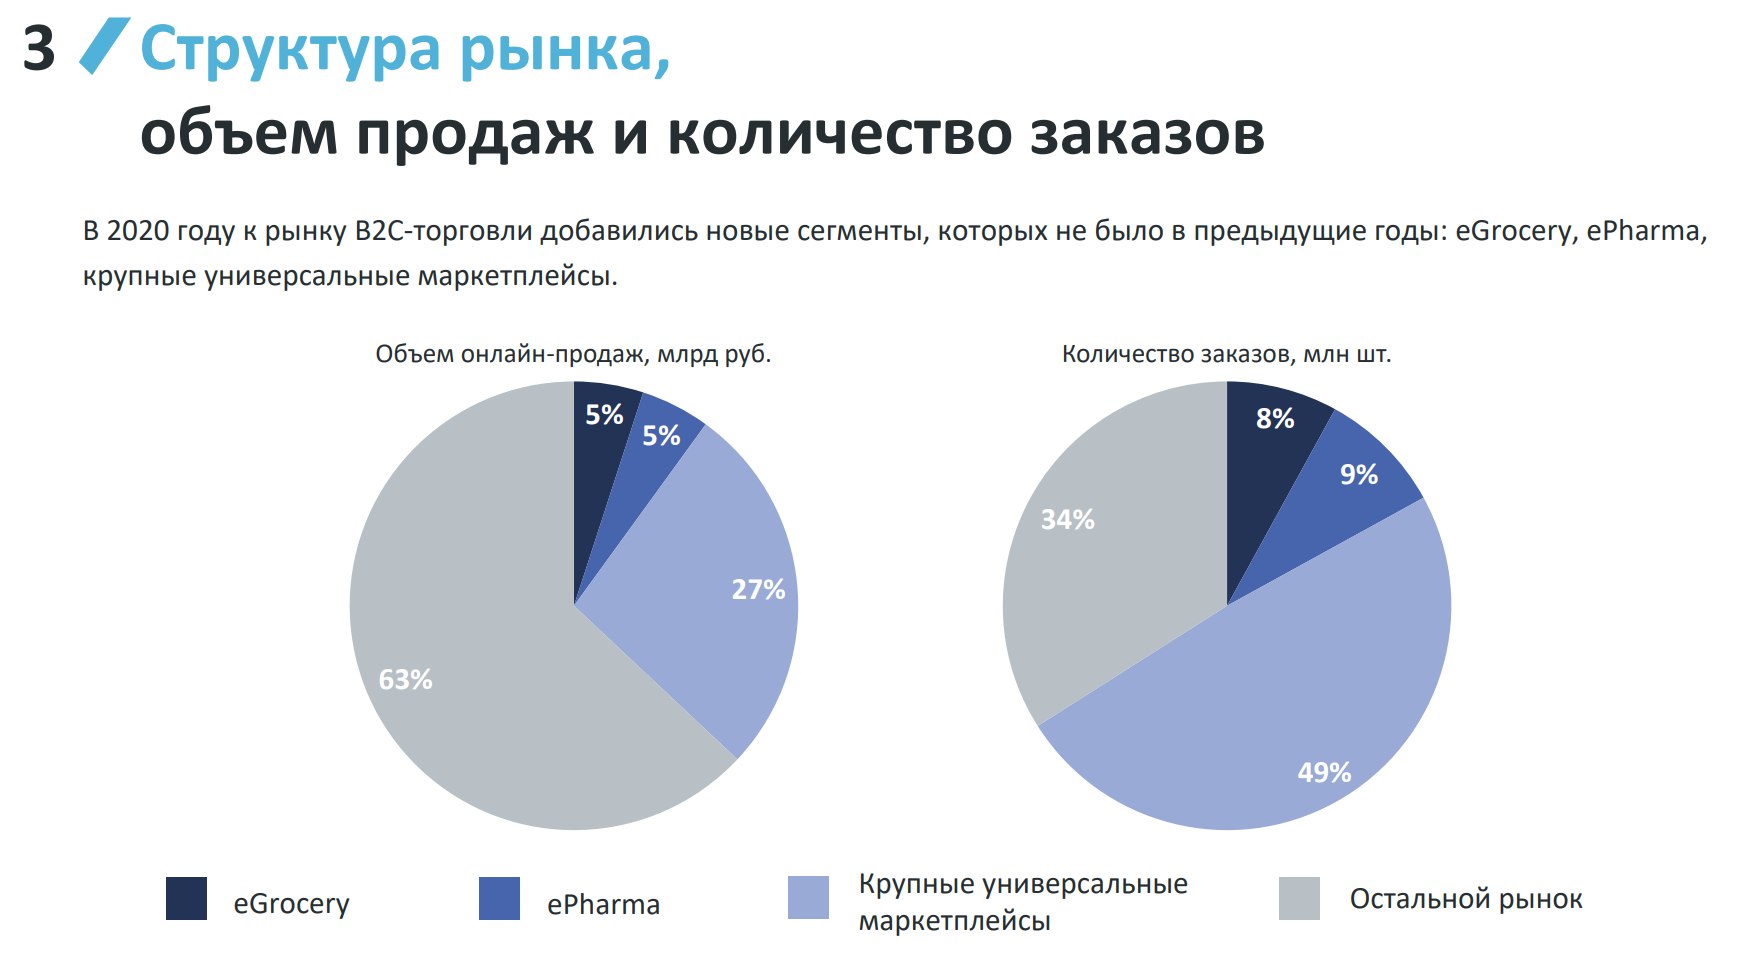 Структура онлайн-продаж в России